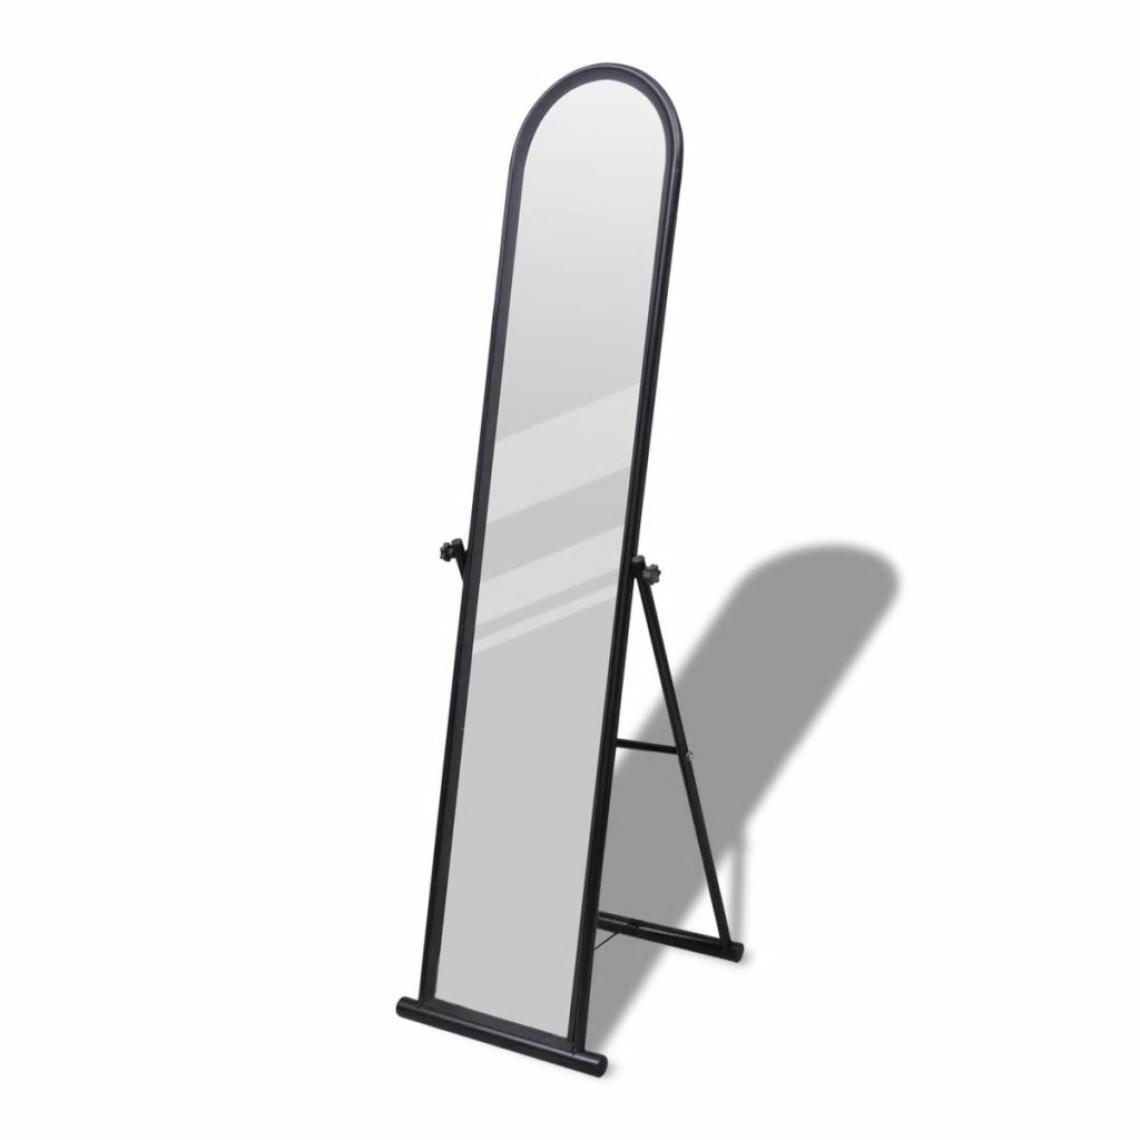 Chunhelife - Miroir autoportant rectangulaire pleine longueur Noir - Miroir de salle de bain